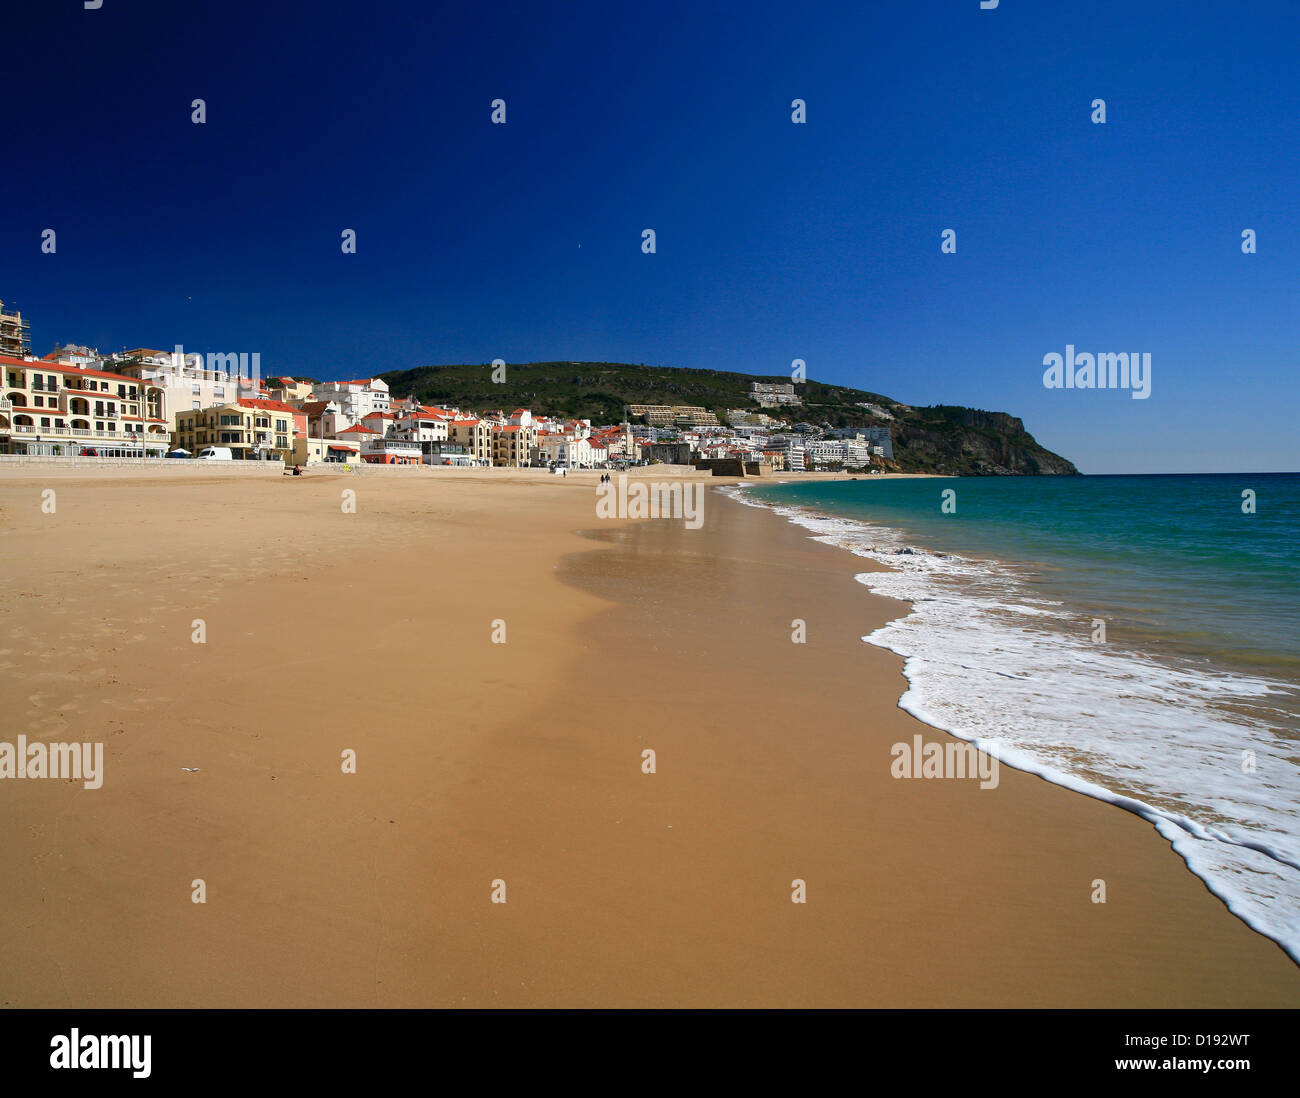 Plage de Sesimbra, Portugal, ciel bleu, surf. Banque D'Images